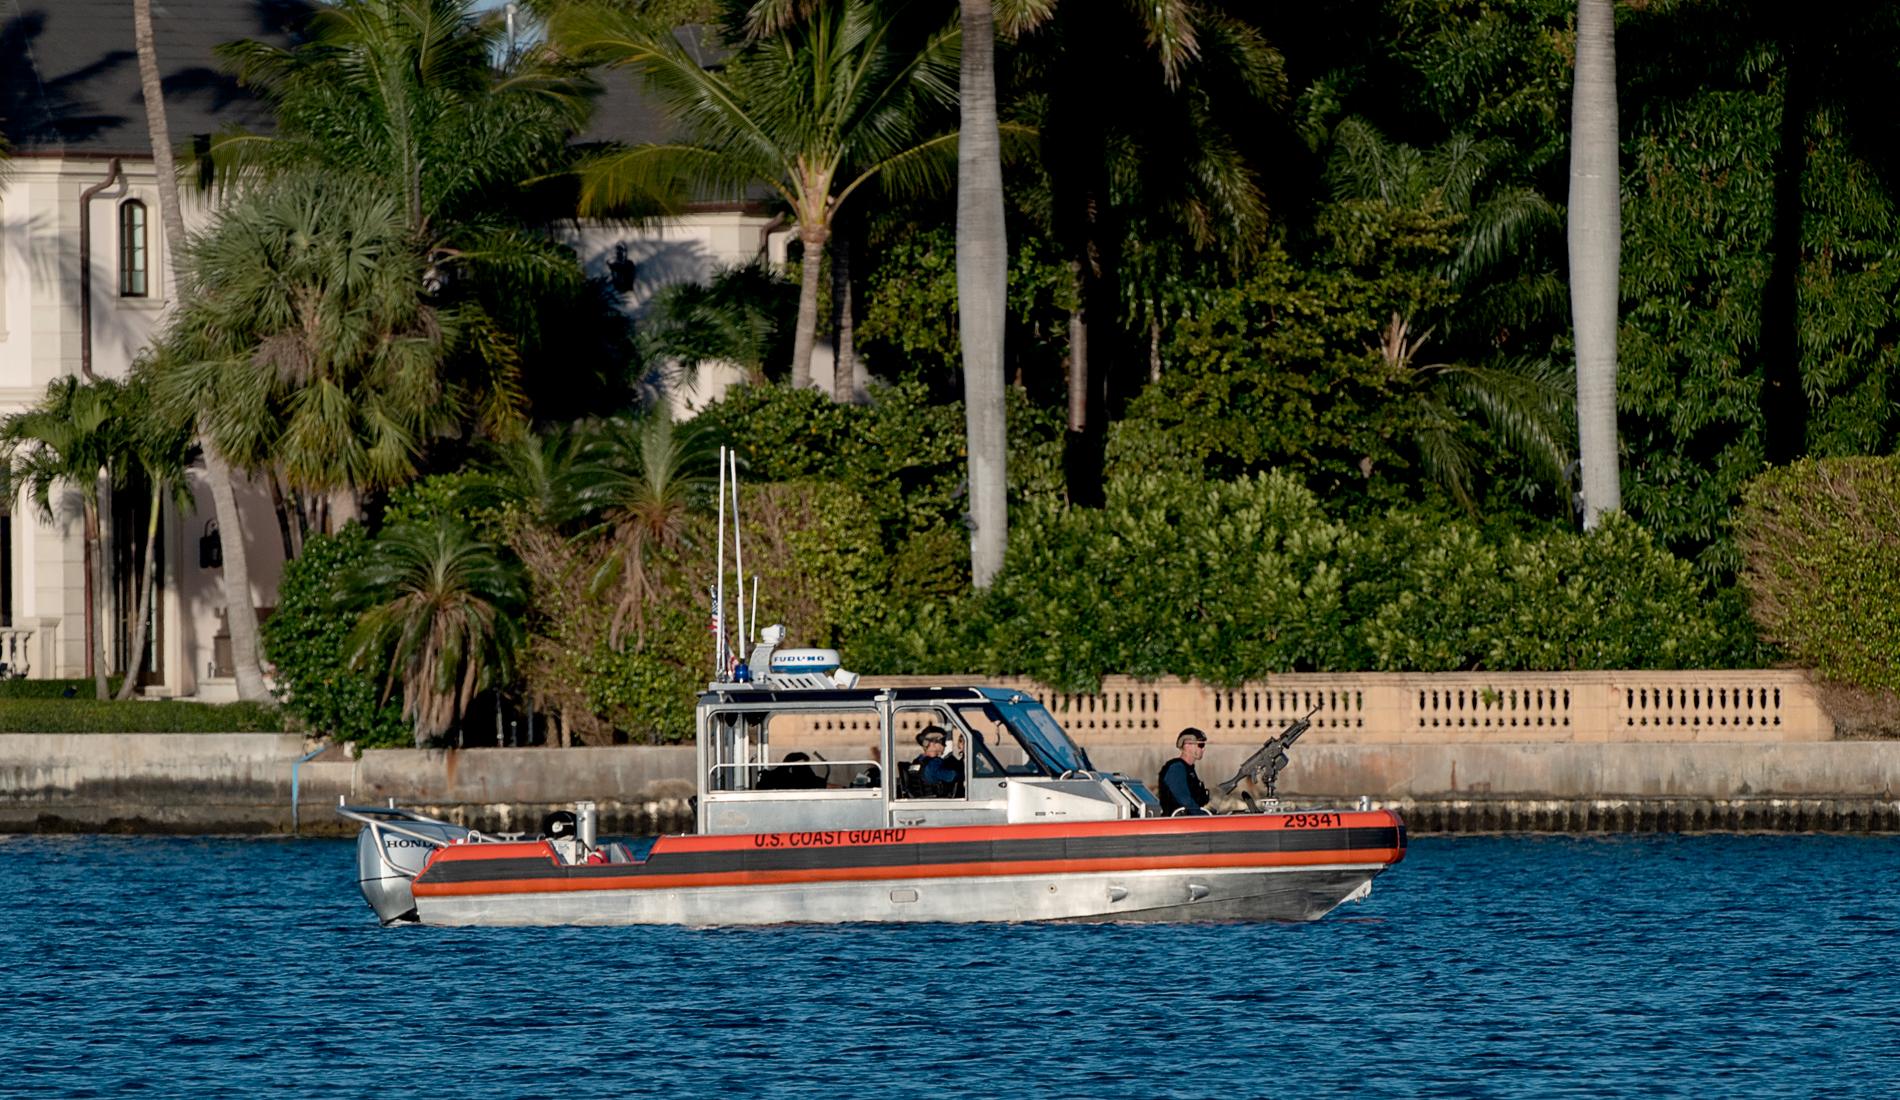 Kustbevakningens båtar vakar runt Mar-a-Lago,